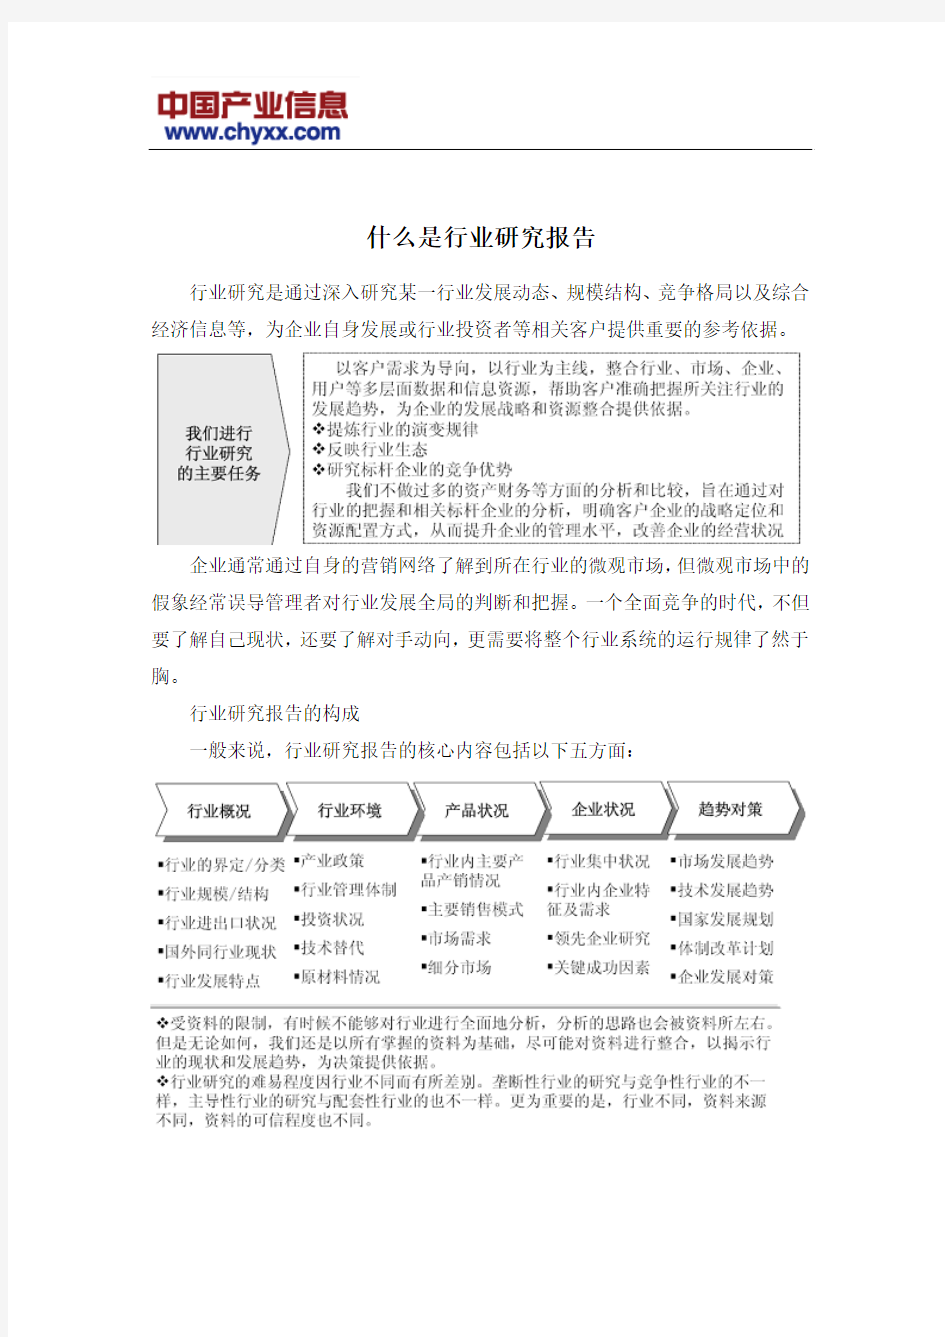 2015-2020年中国精馏塔行业运营评估